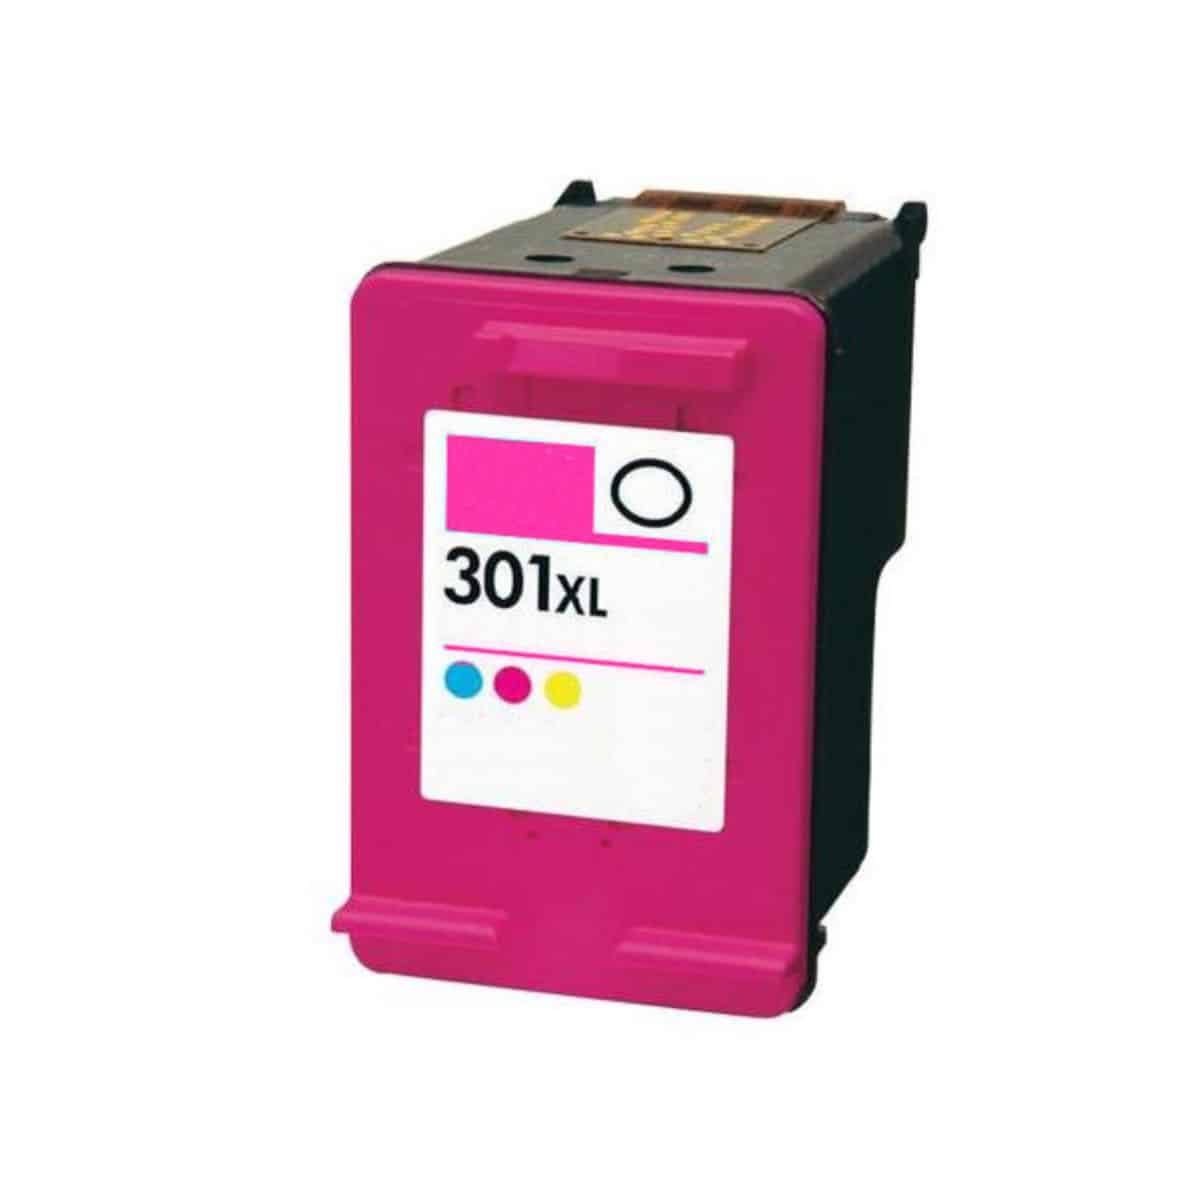 1 cartouche d'encre compatible avec HP 301 Couleur pour imprimante HP